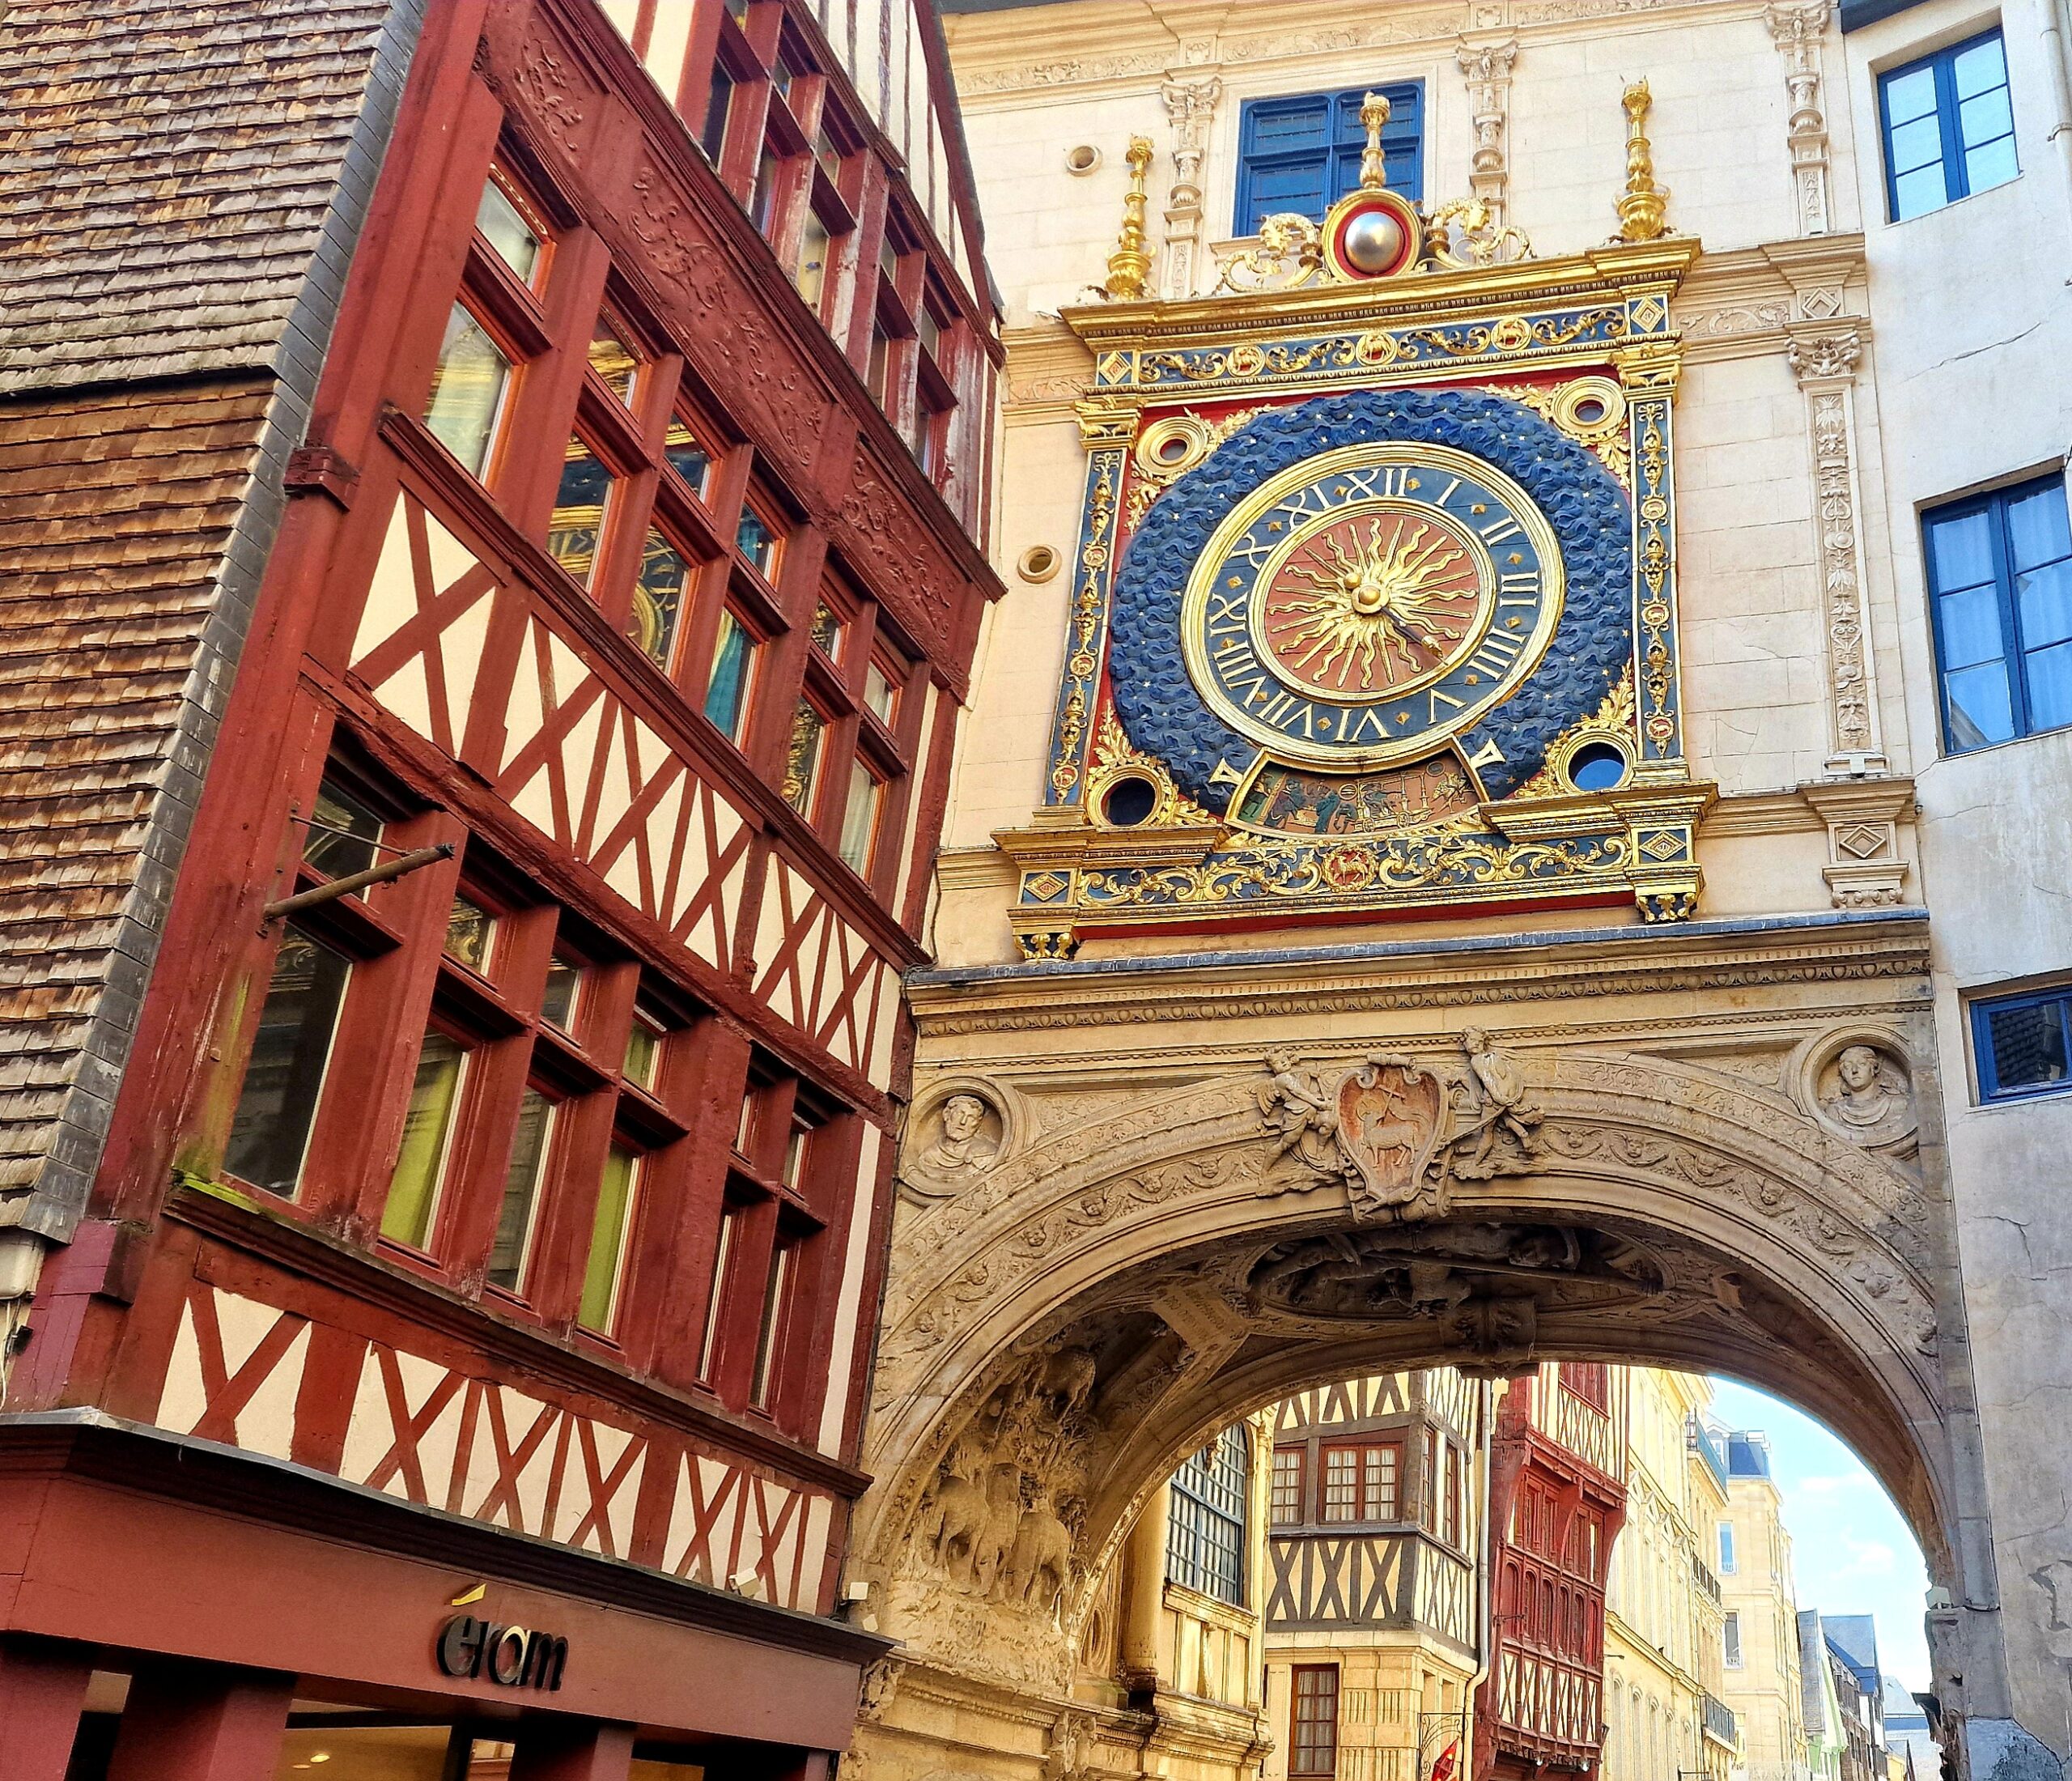 Le gros horloge de Rouen : l'horloge historique qui a inspiré Big Ben